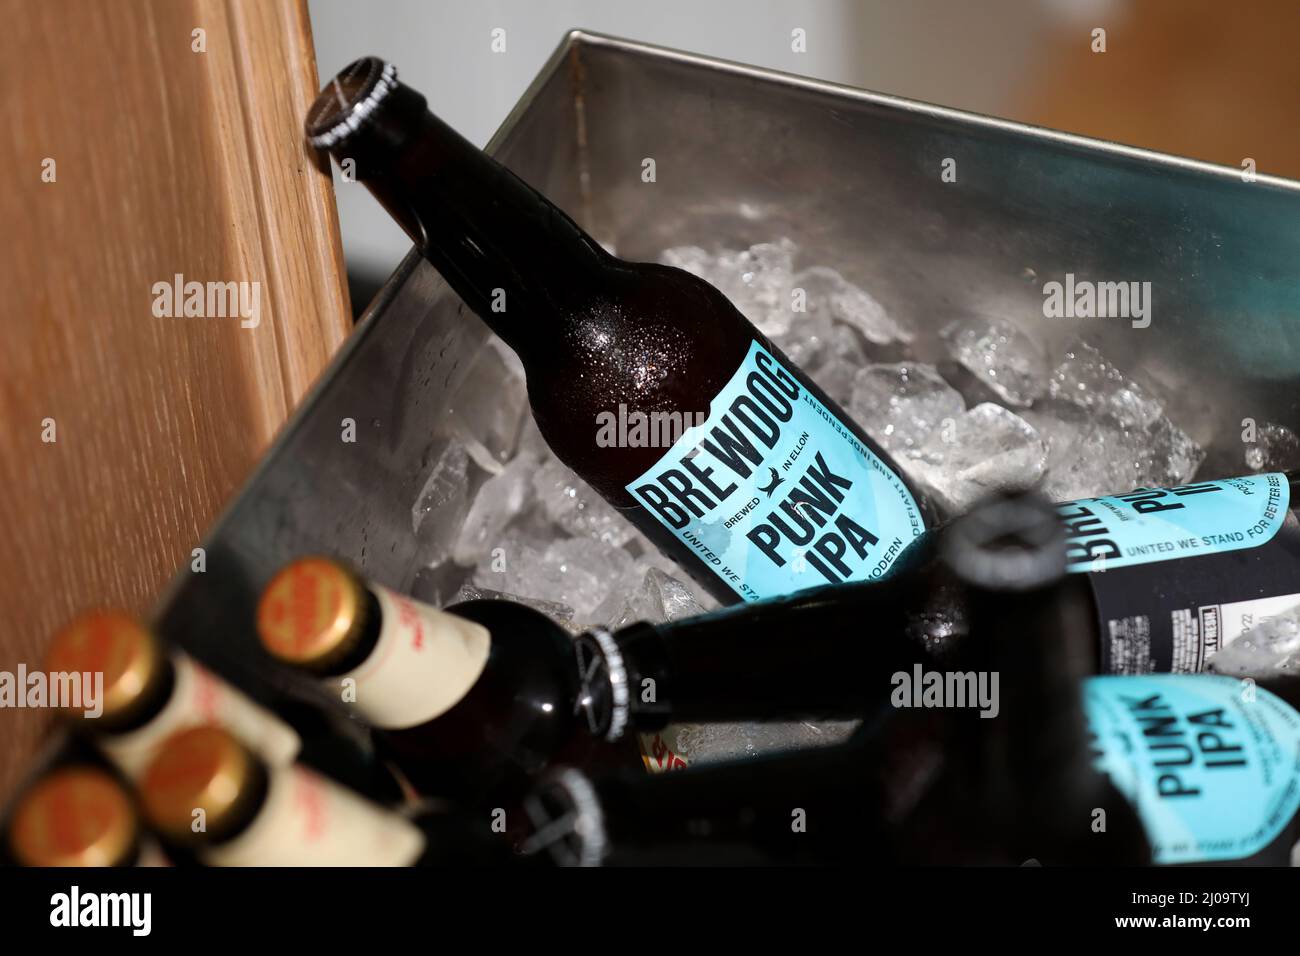 Bottiglie di BrewDog, Punk IPA raffigurato in un secchio di ghiaccio in un hotel a Londra, Regno Unito. Foto Stock